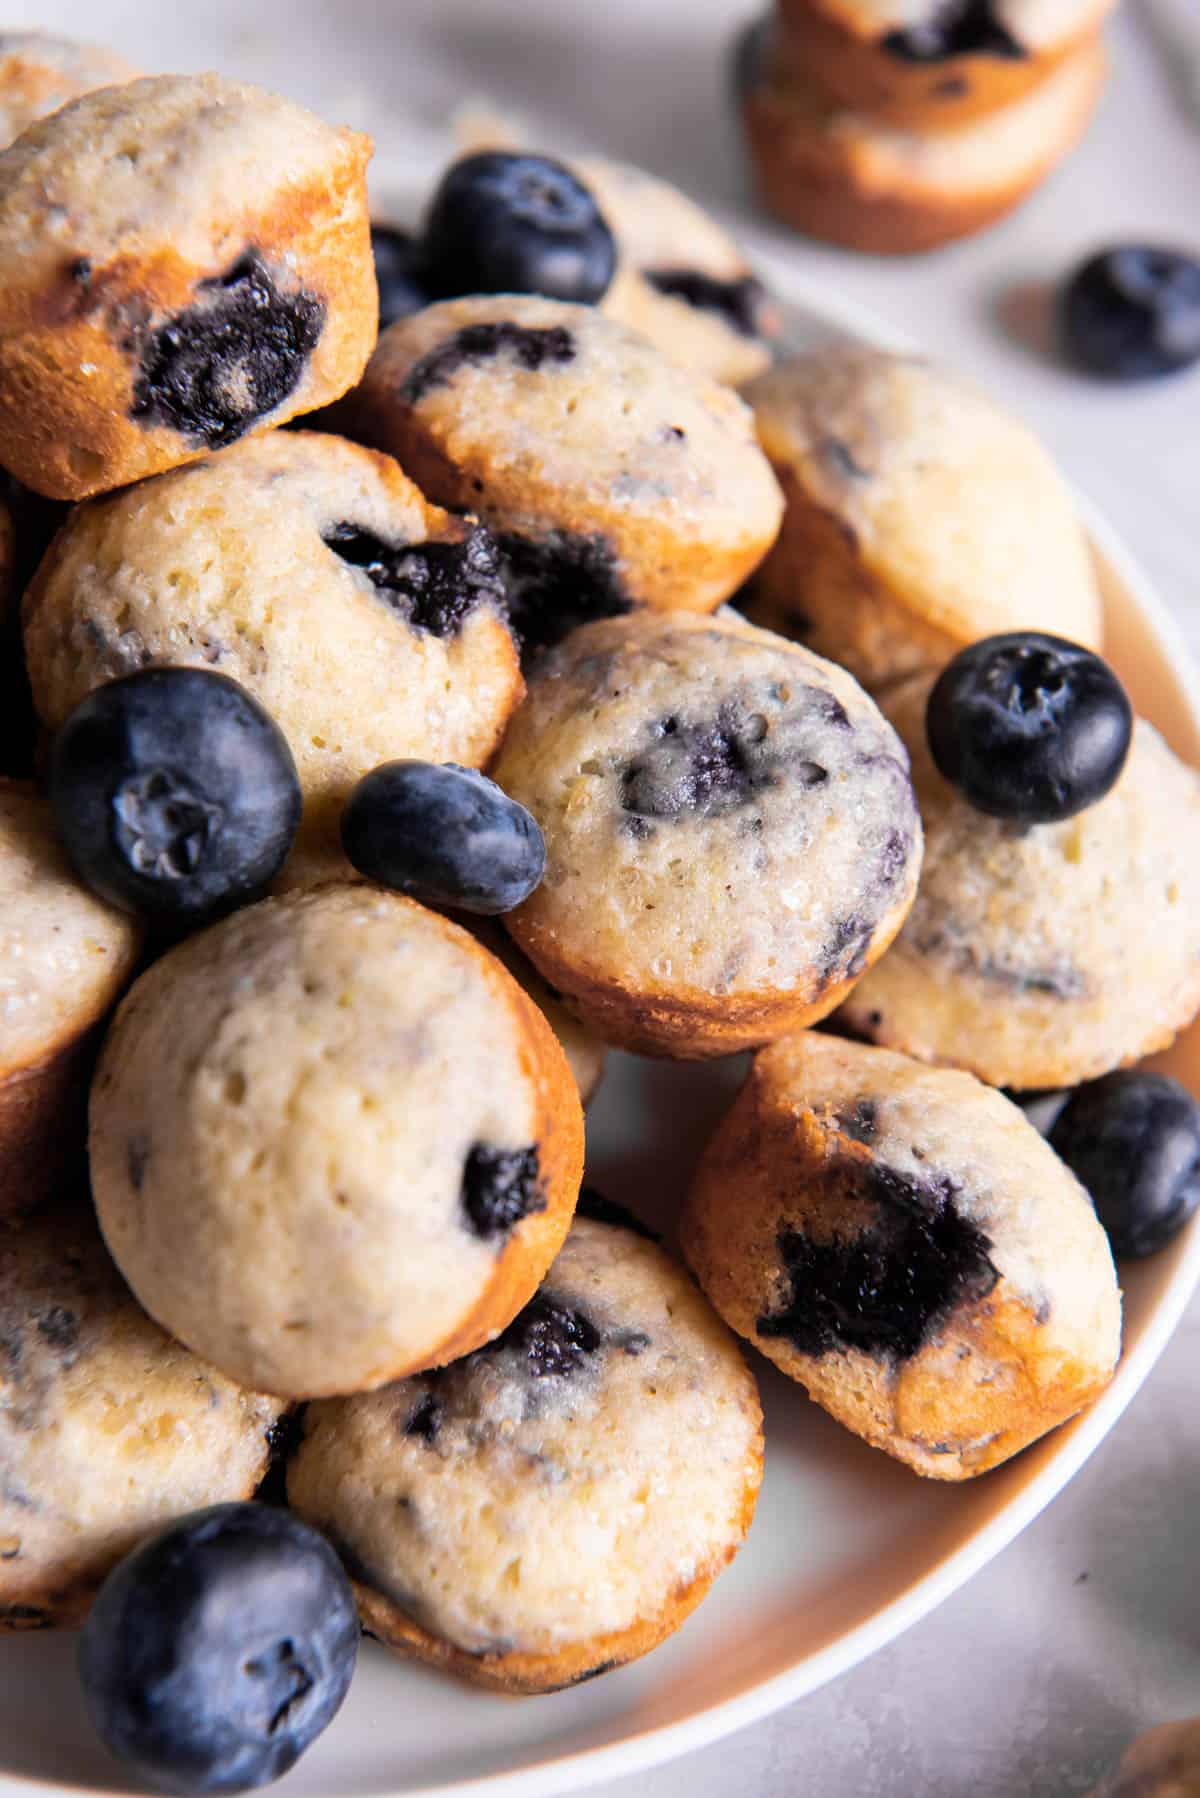 Mini-muffins aux myrtilles posés sur une assiette pour être servis. Des myrtilles fraîches sont dispersées sur les muffins.